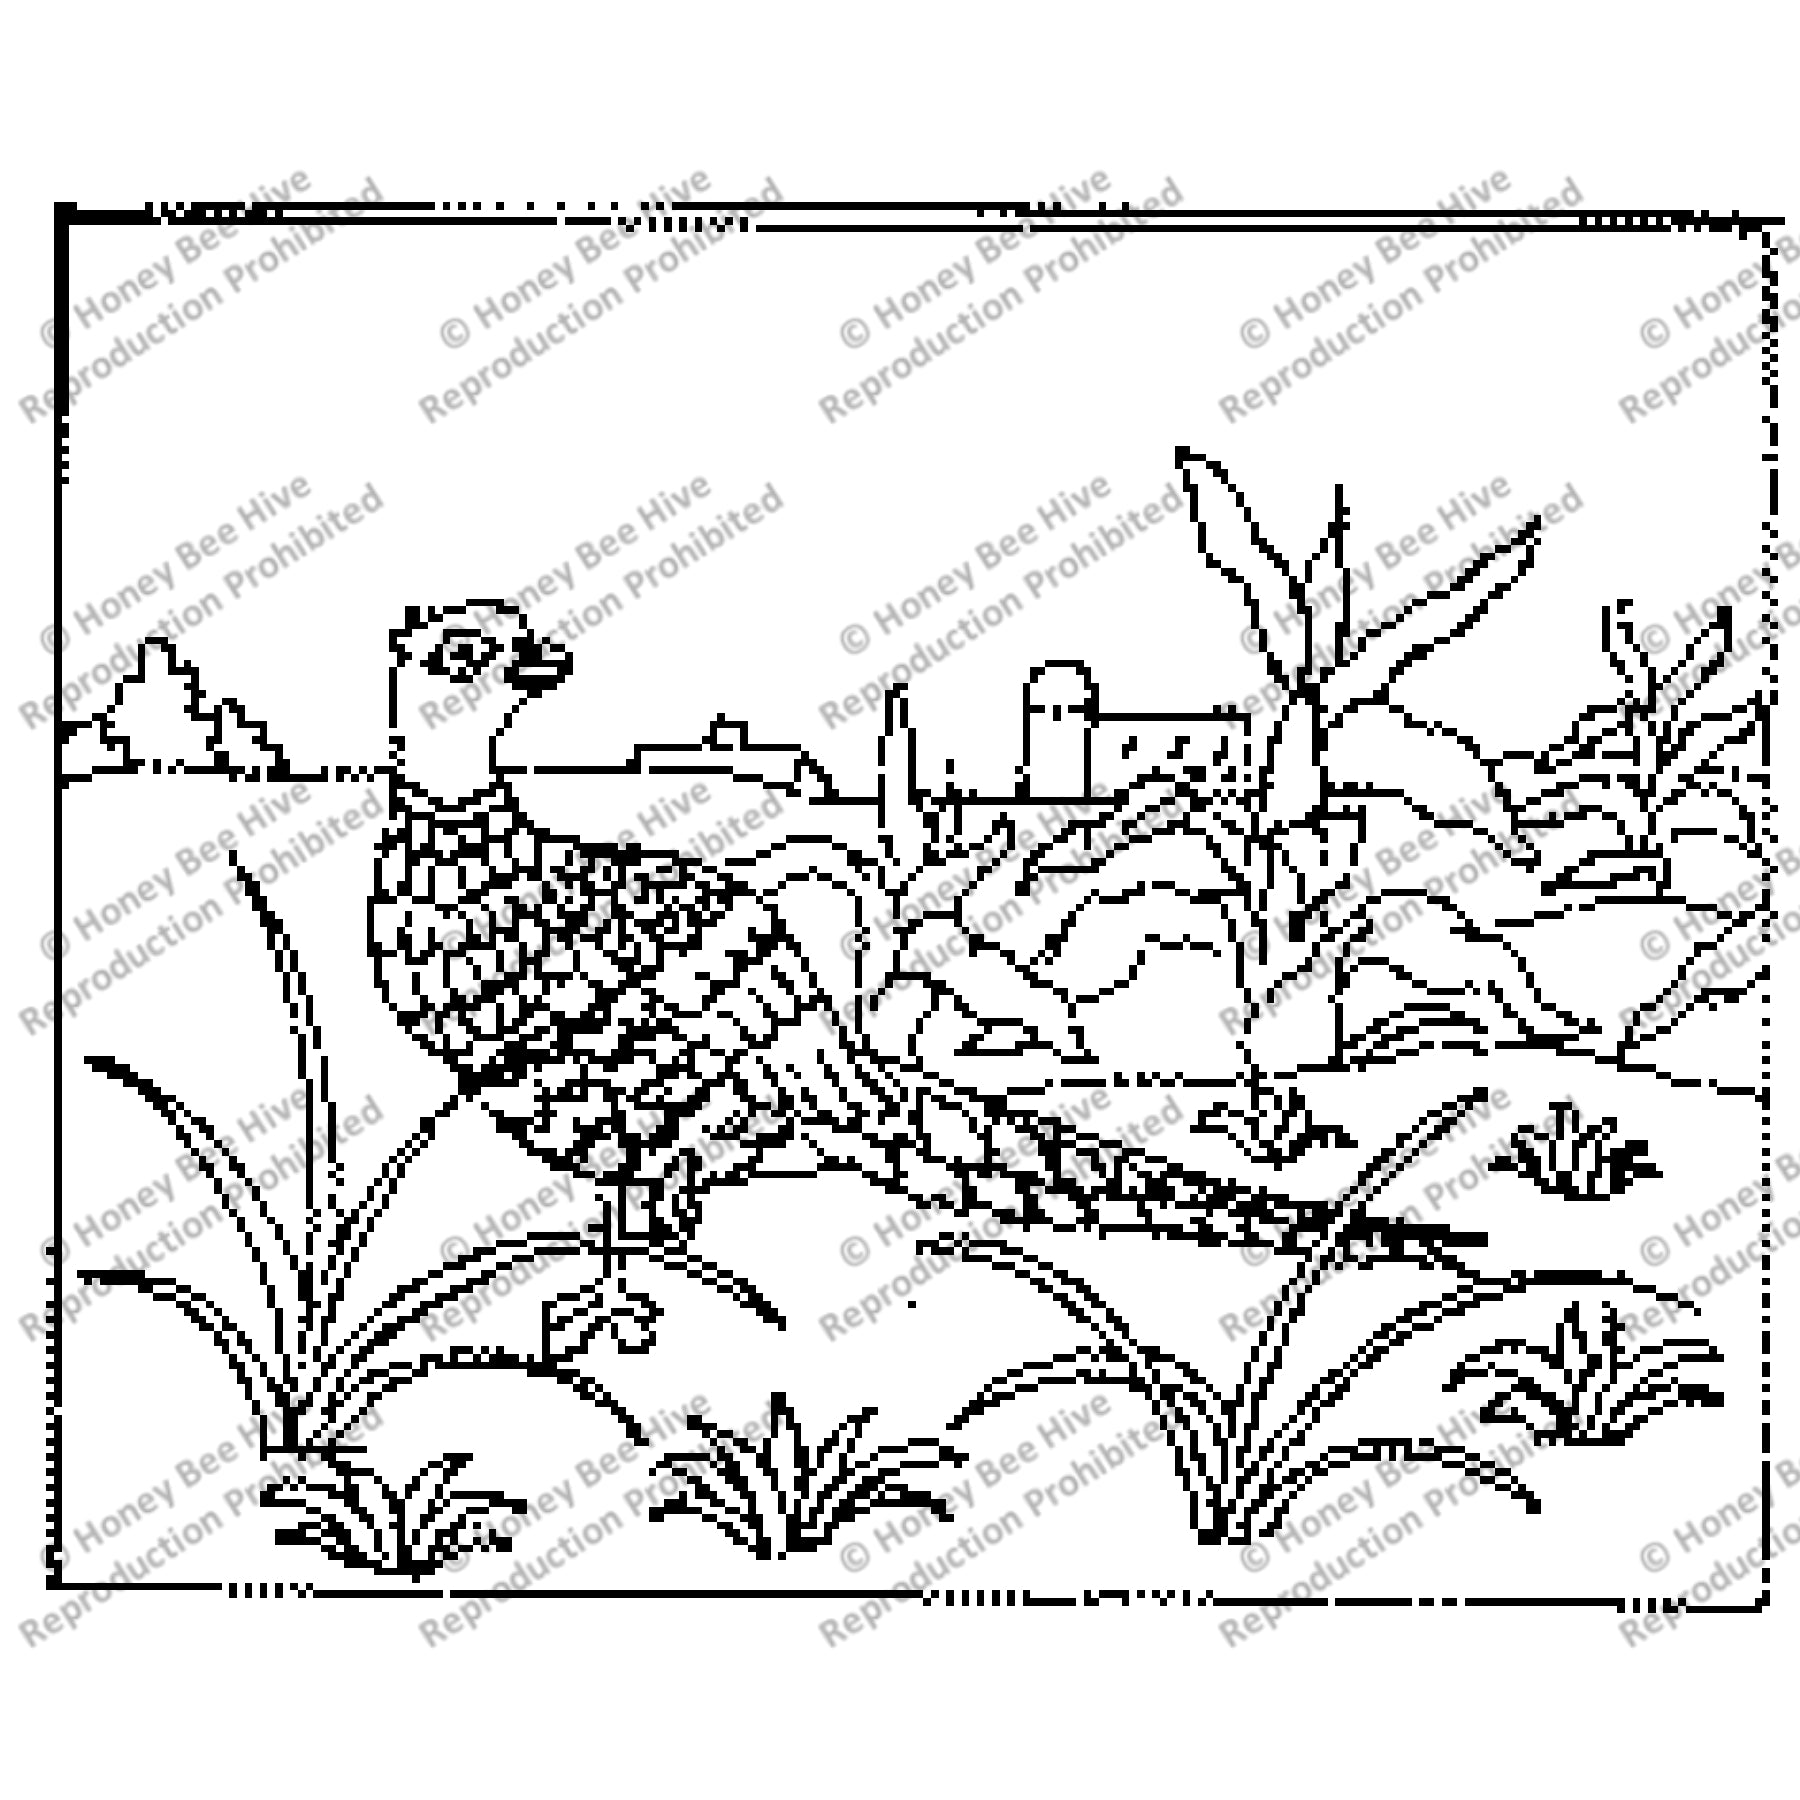 Lone Pheasant, rug hooking pattern